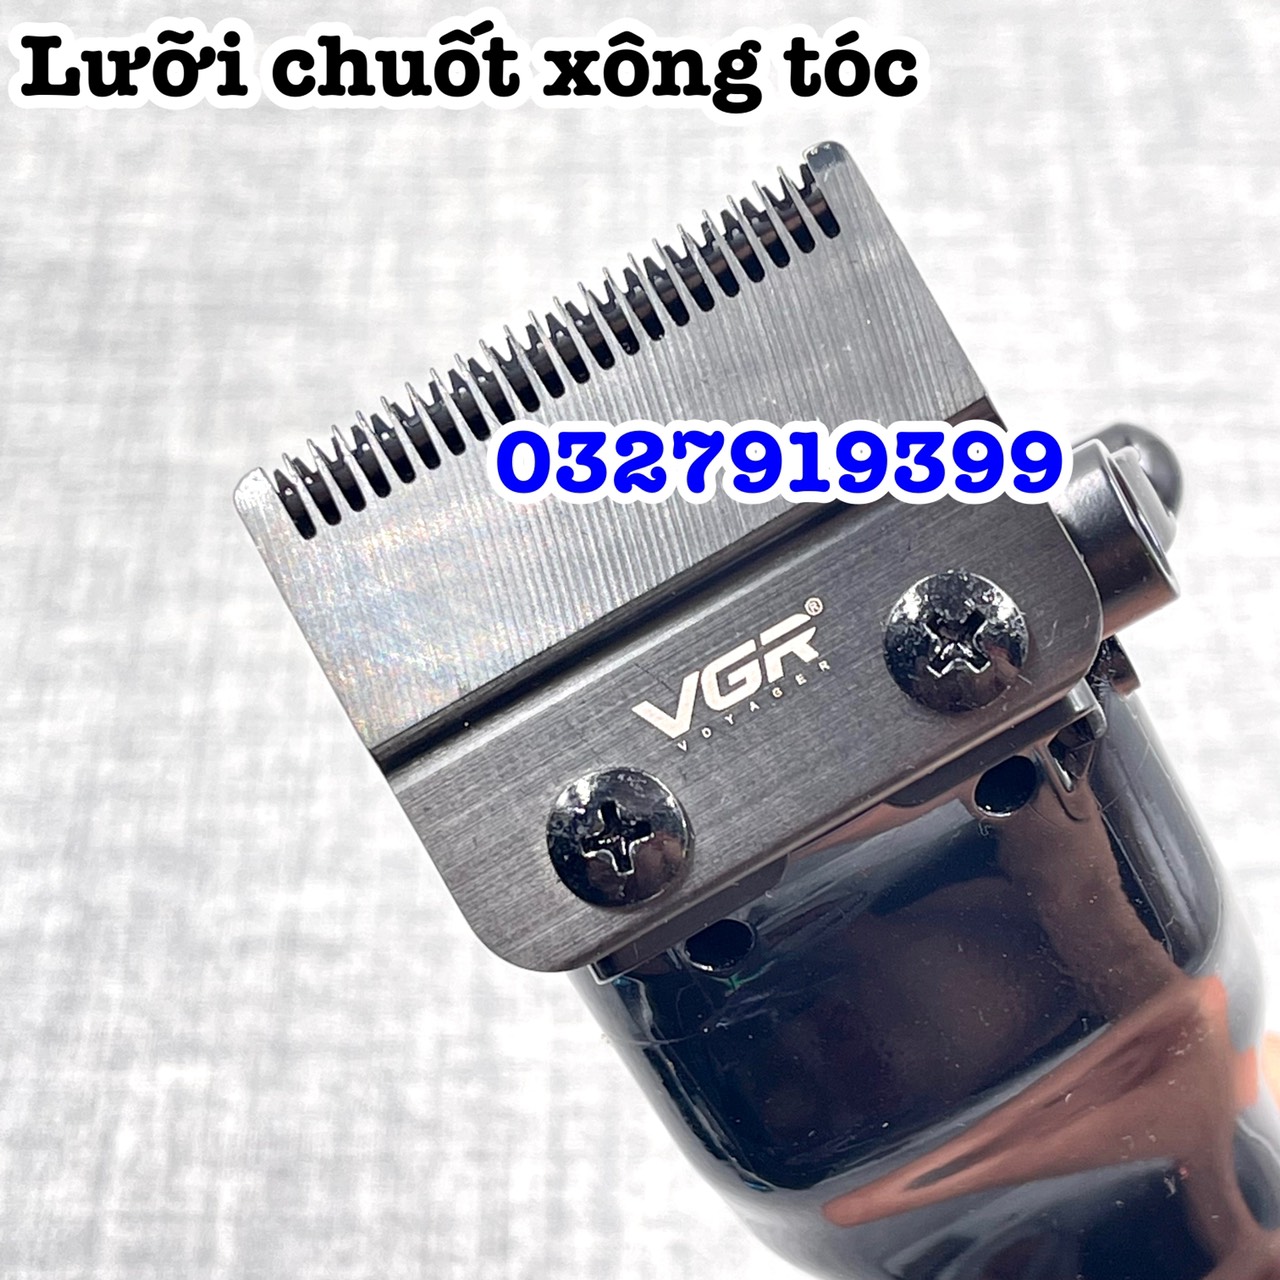 Tông đơ cắt tóc động cơ từ tính VGR 653